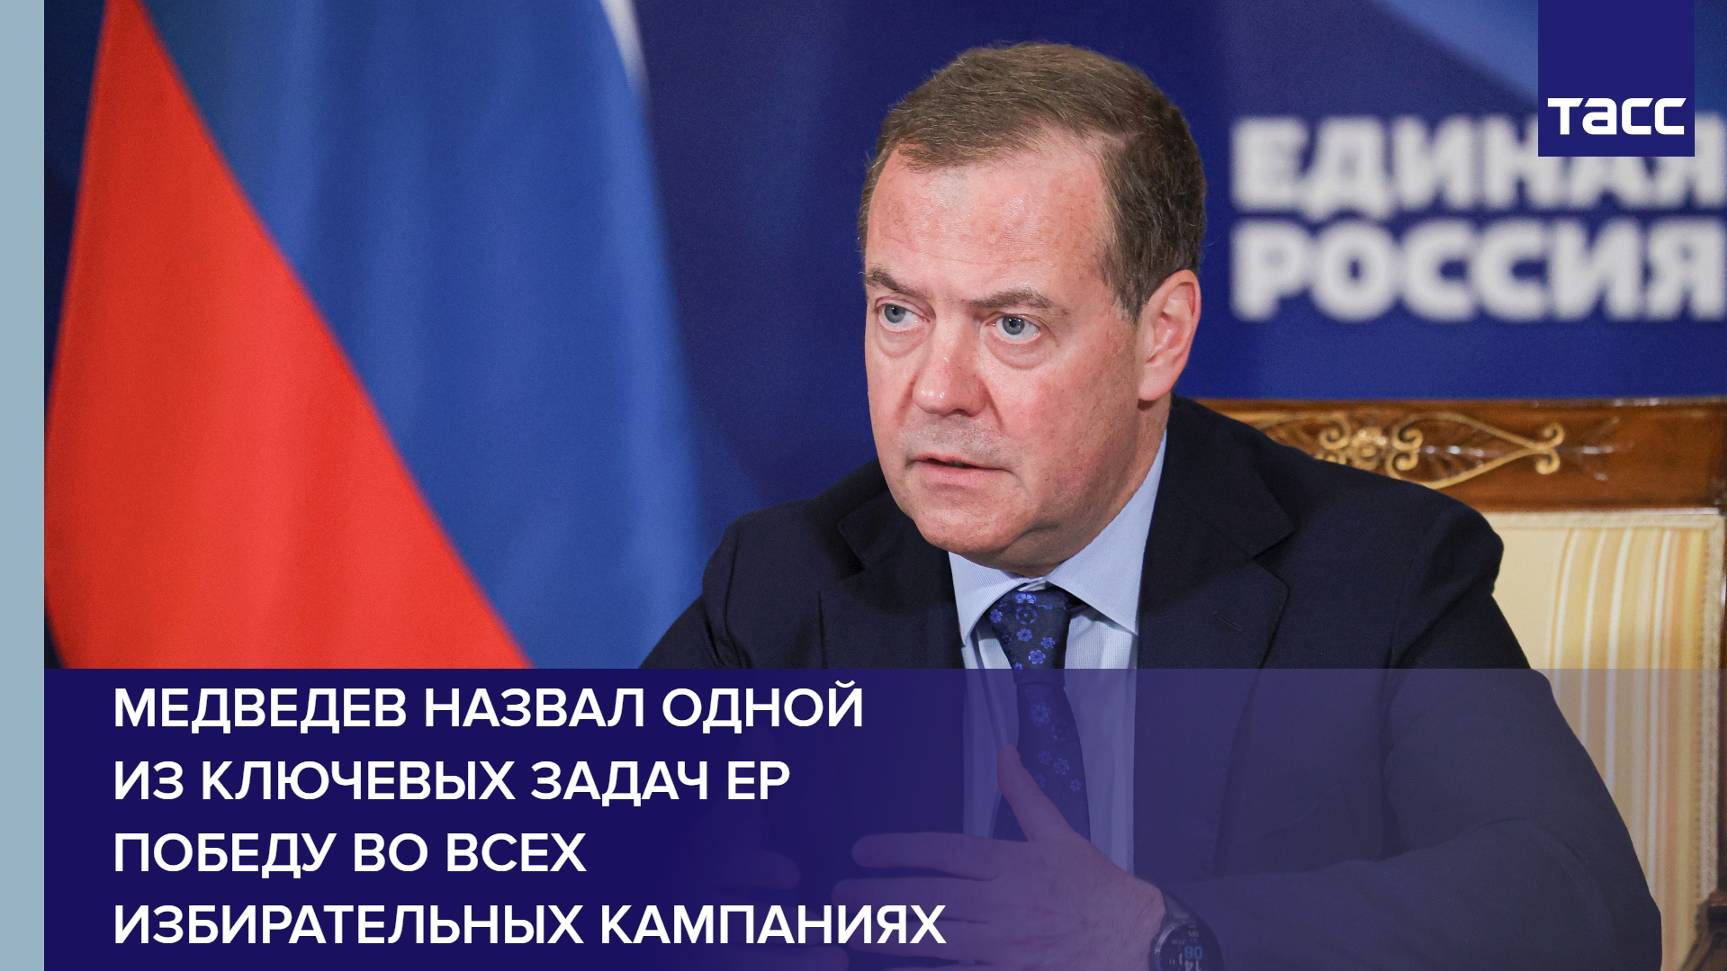 Медведев назвал одной из ключевых задач ЕР победу во всех избирательных кампаниях